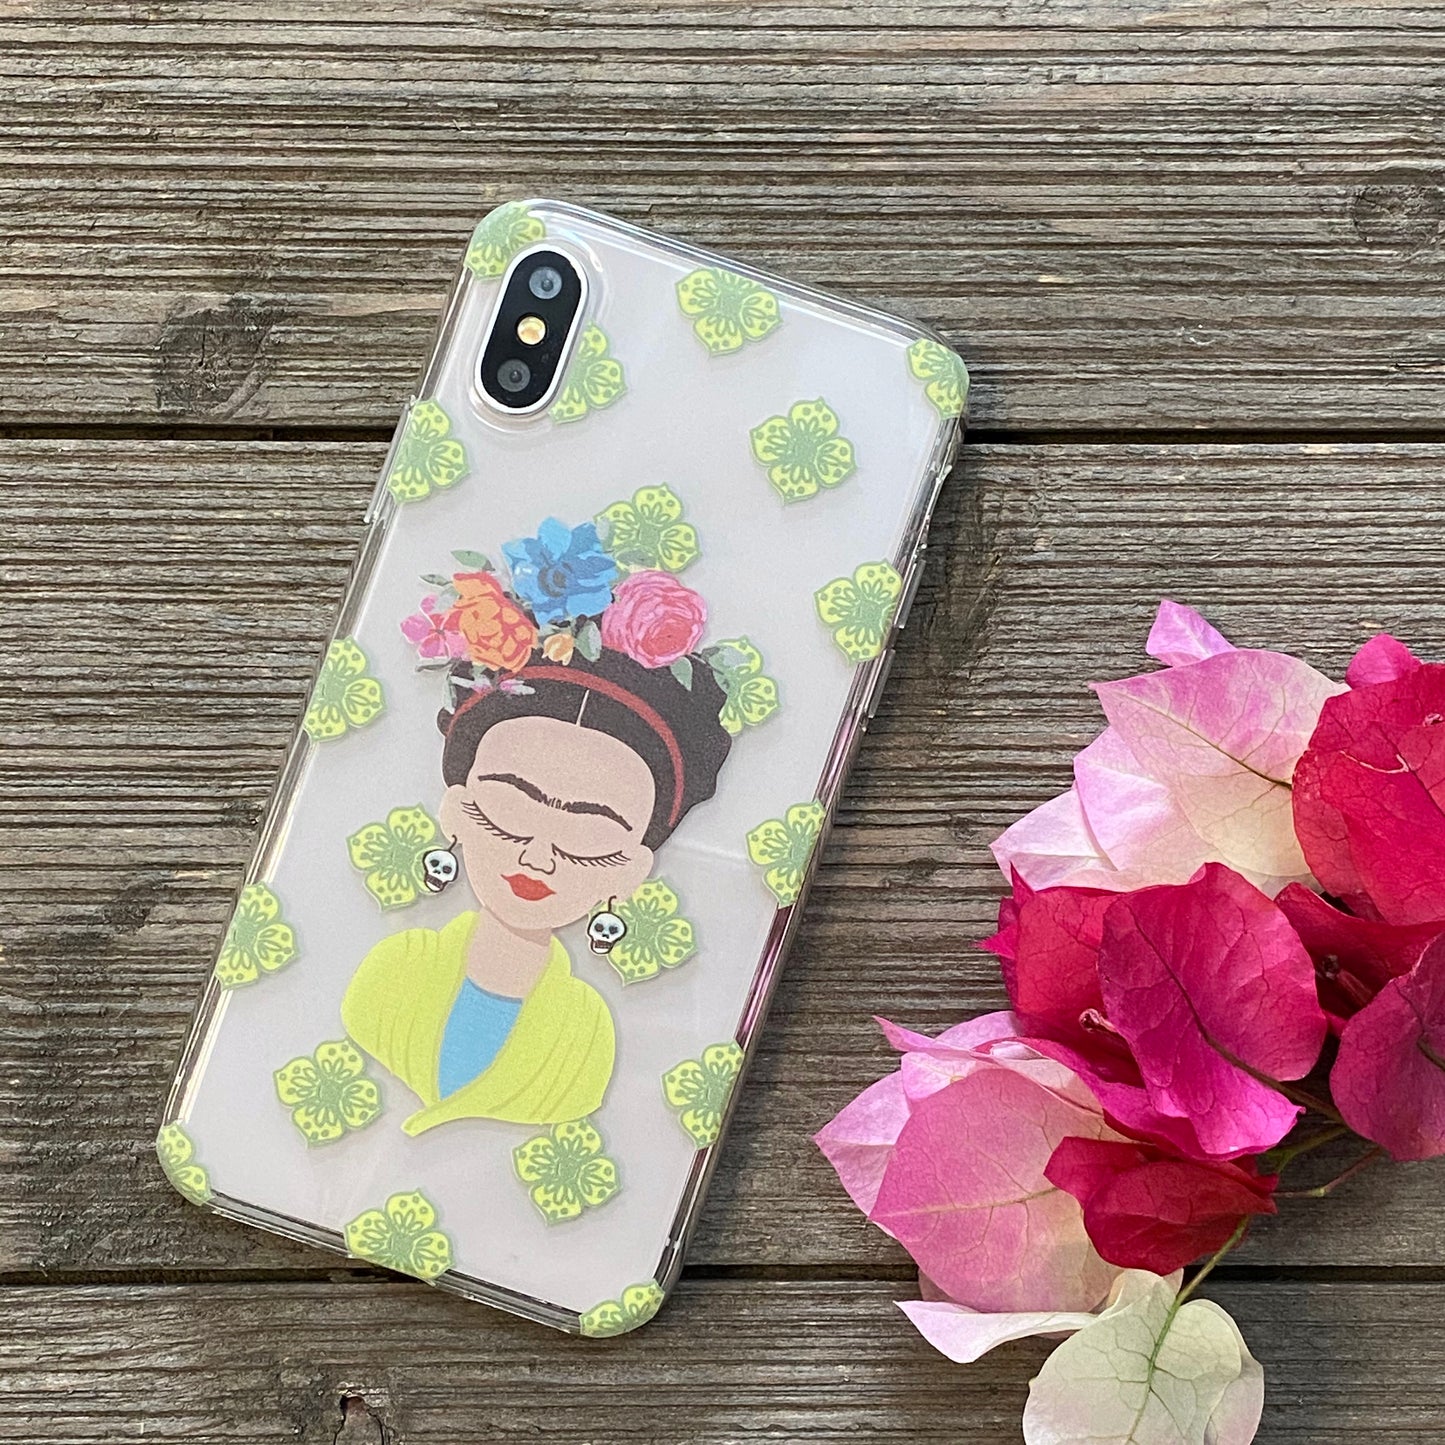 Frida Kahlo iPhone Case